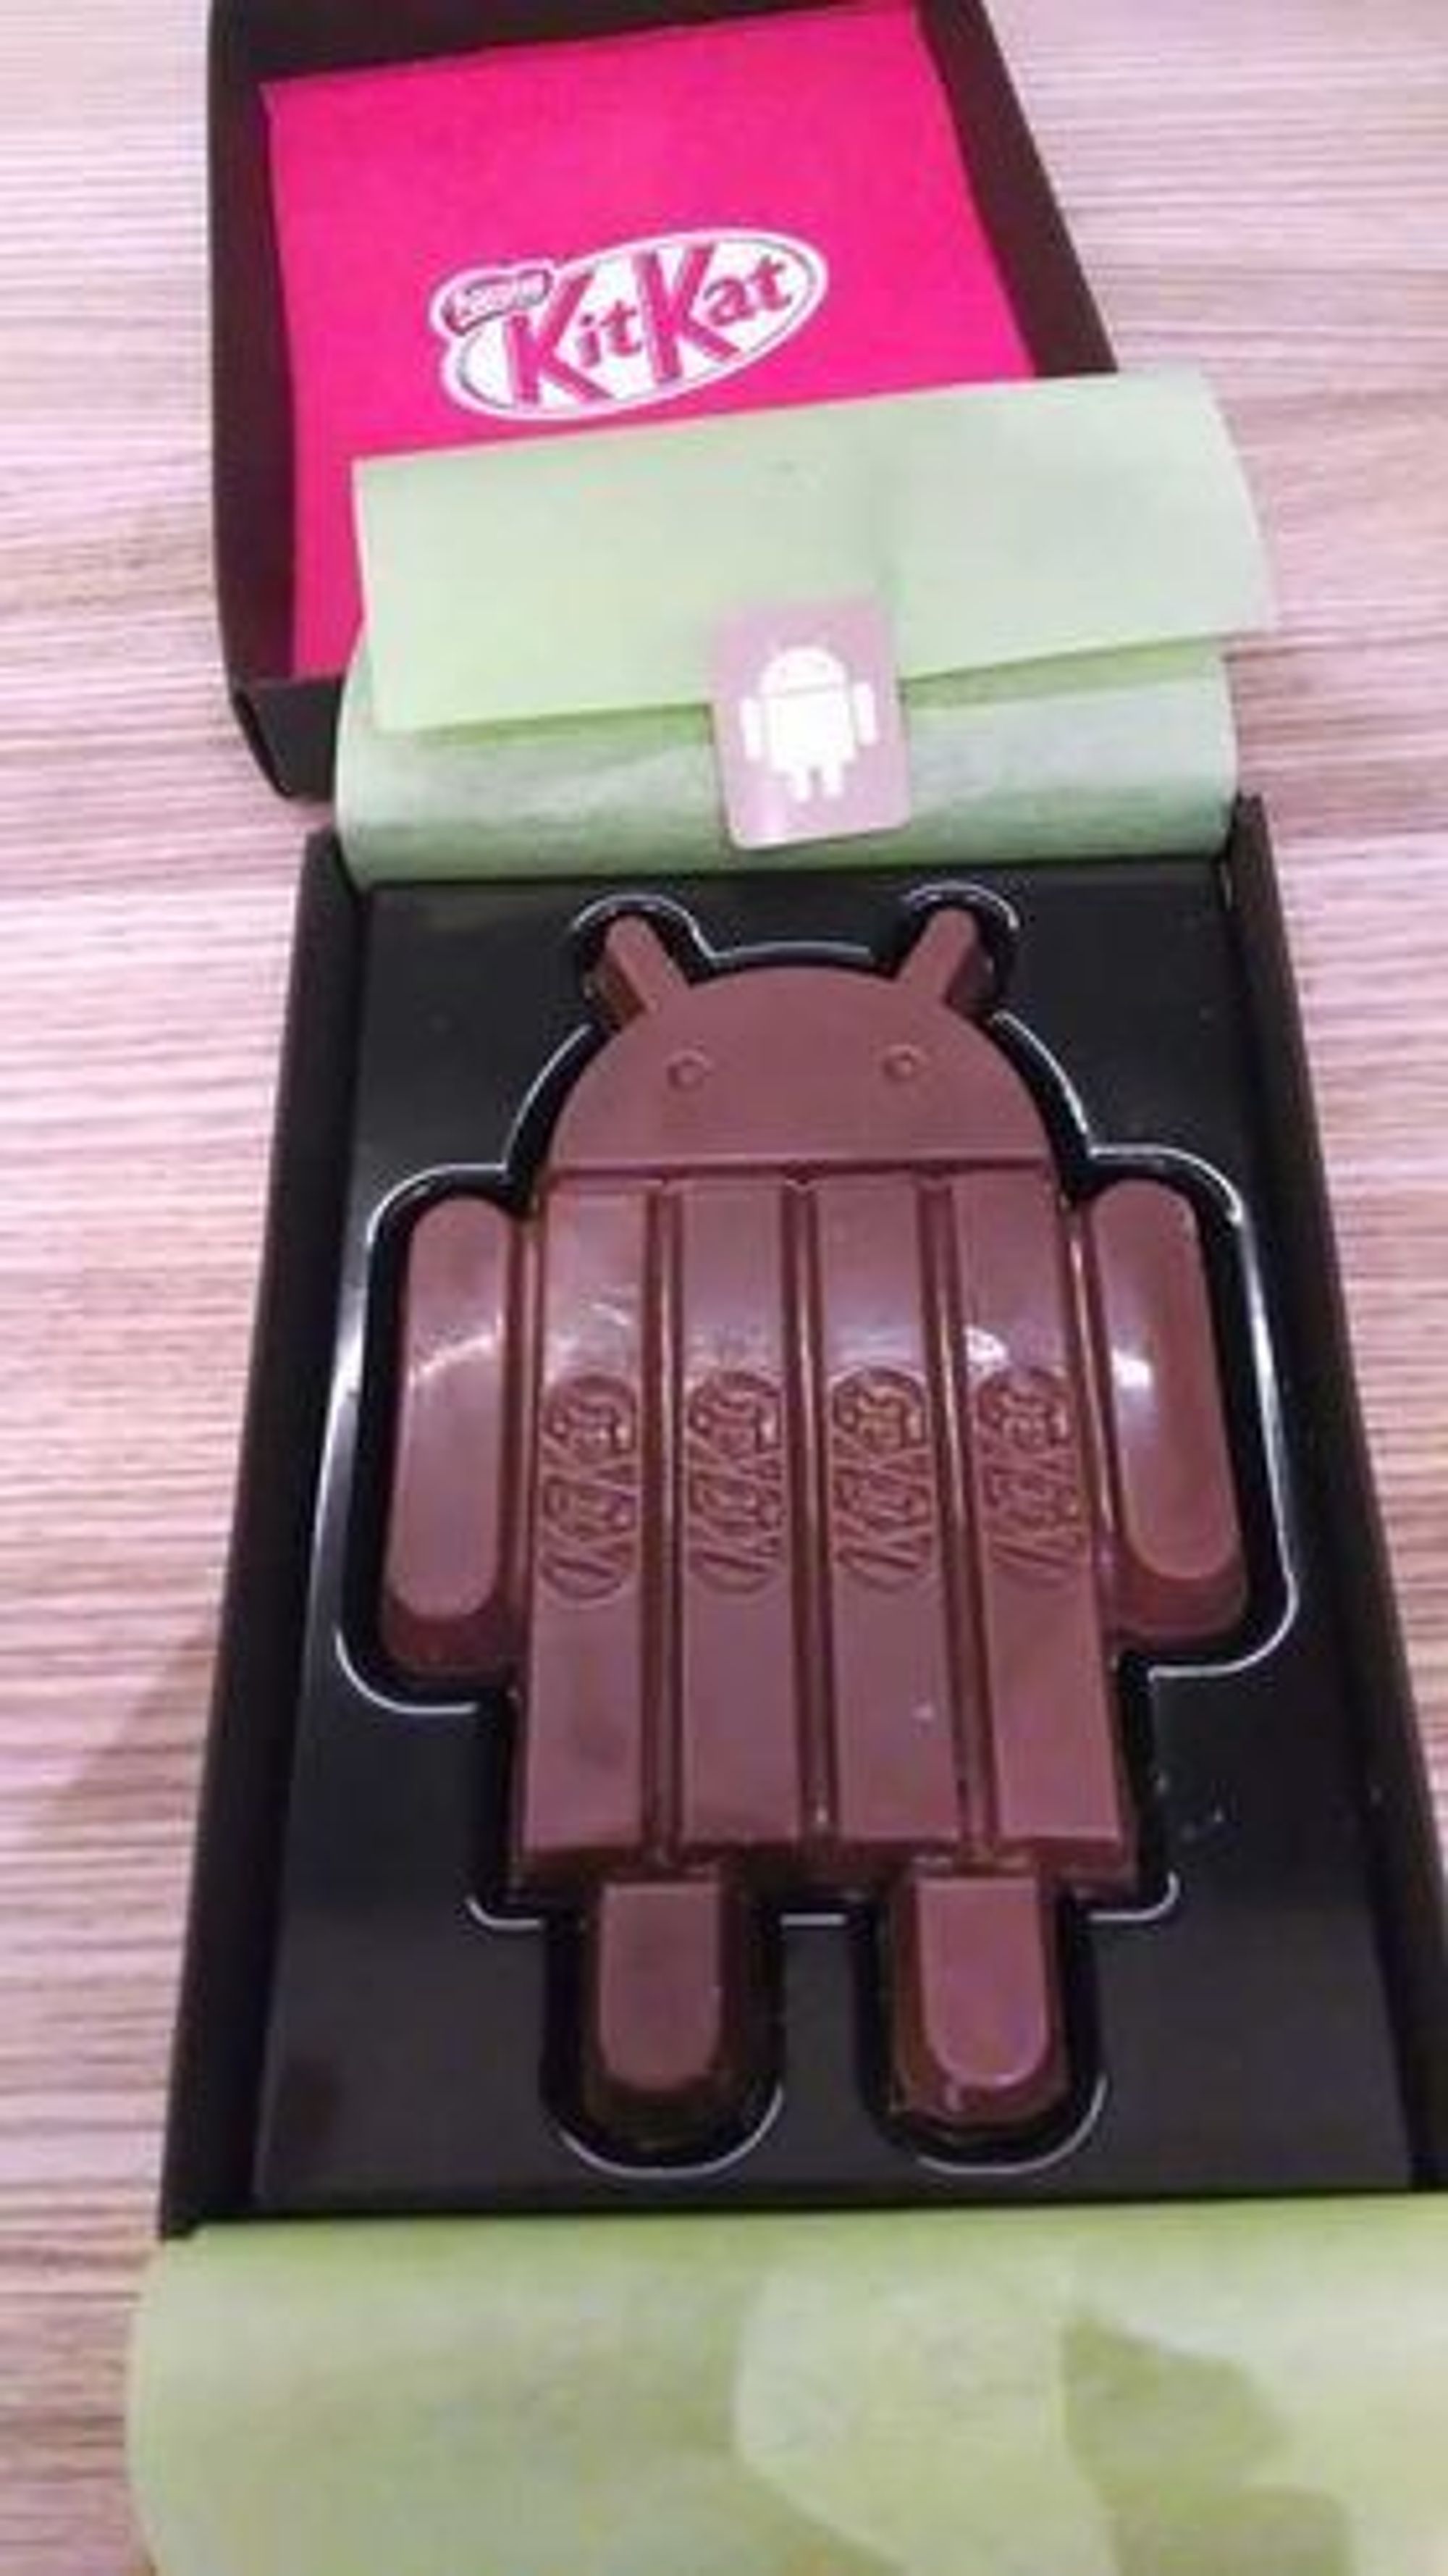 Android-utgaven av KitKat-sjokoladen.